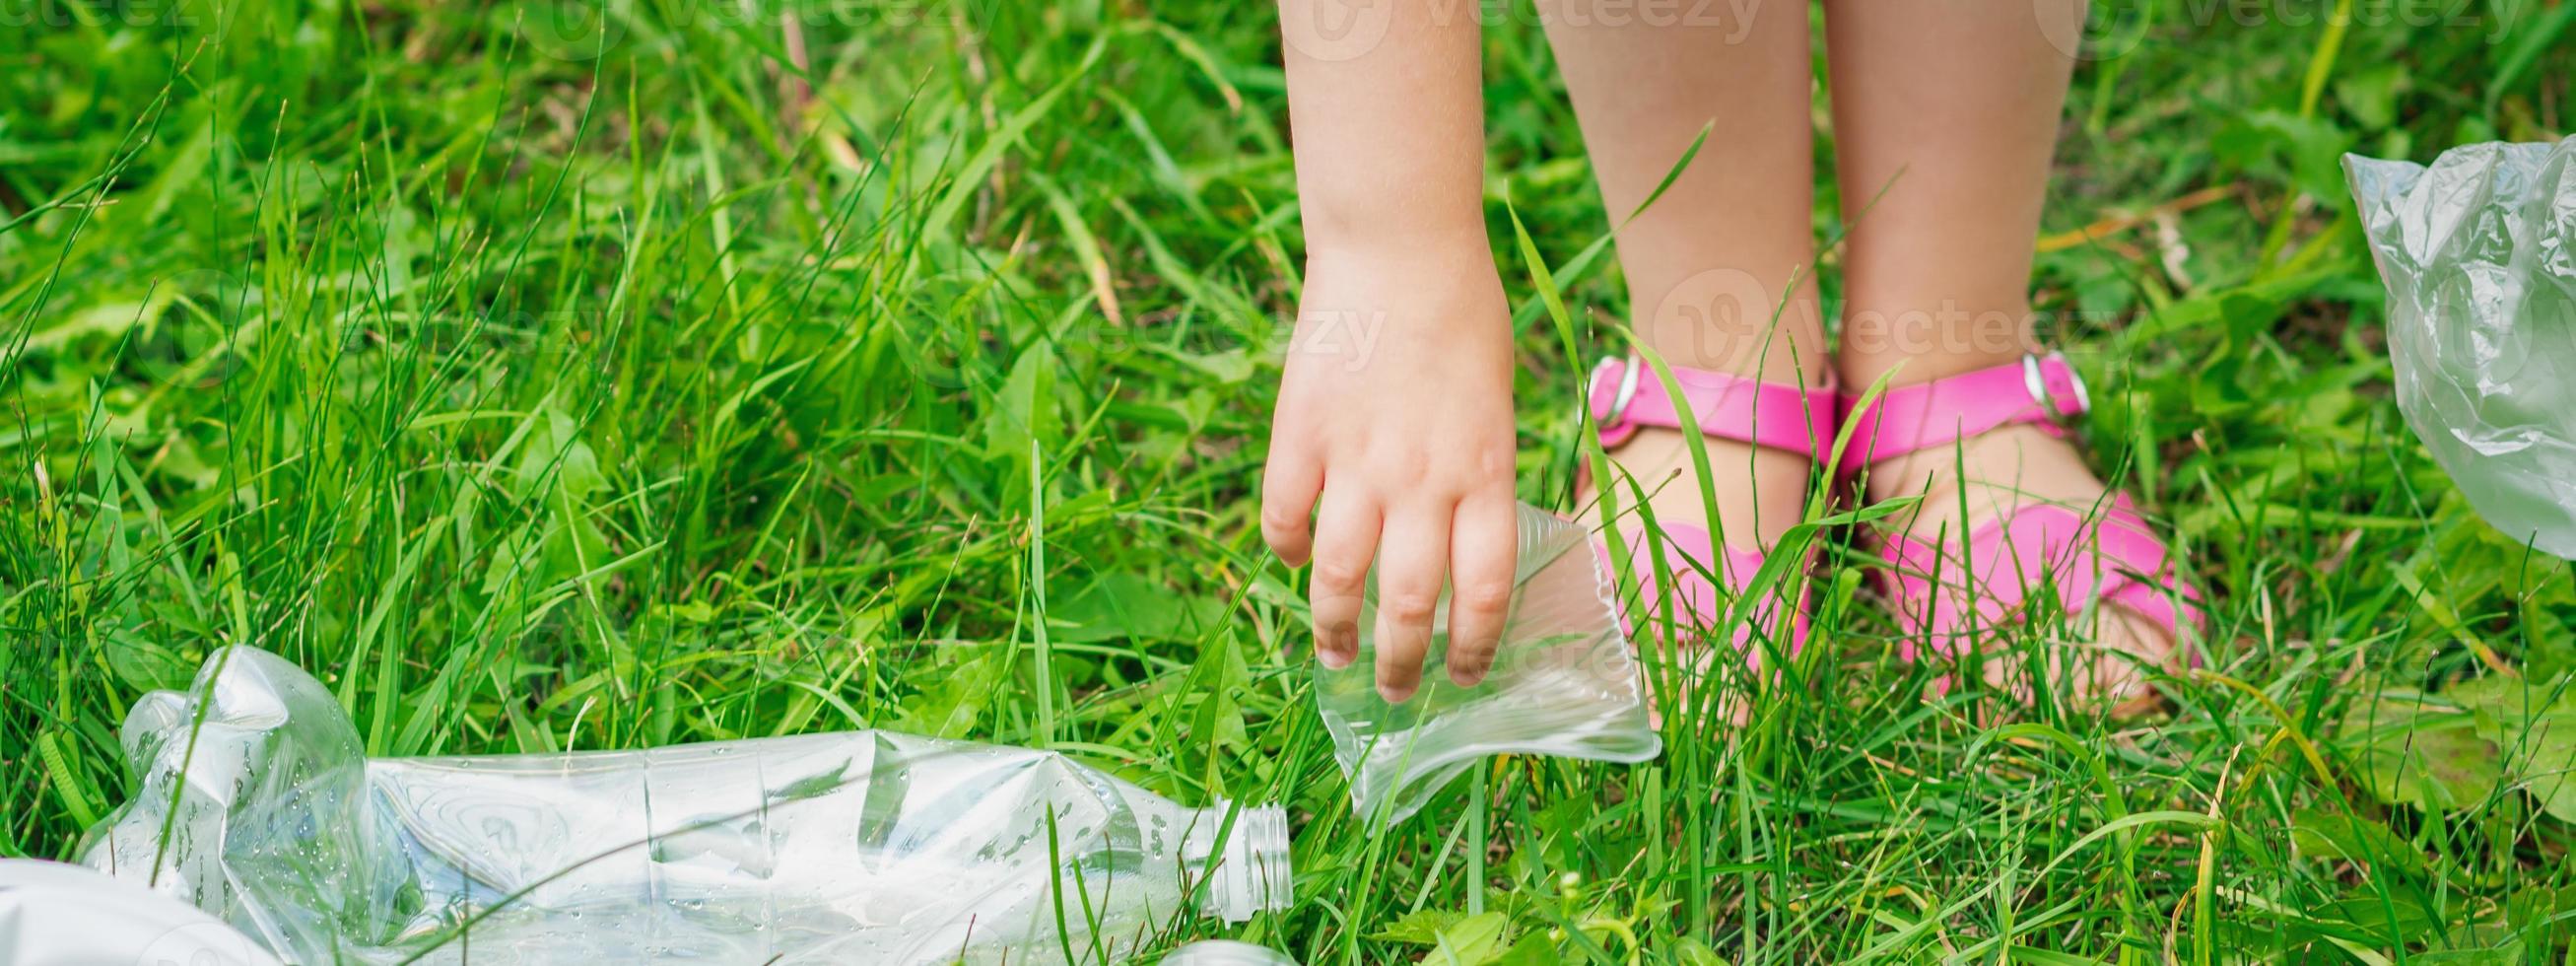 la main de l'enfant nettoie l'herbe verte des déchets en plastique photo